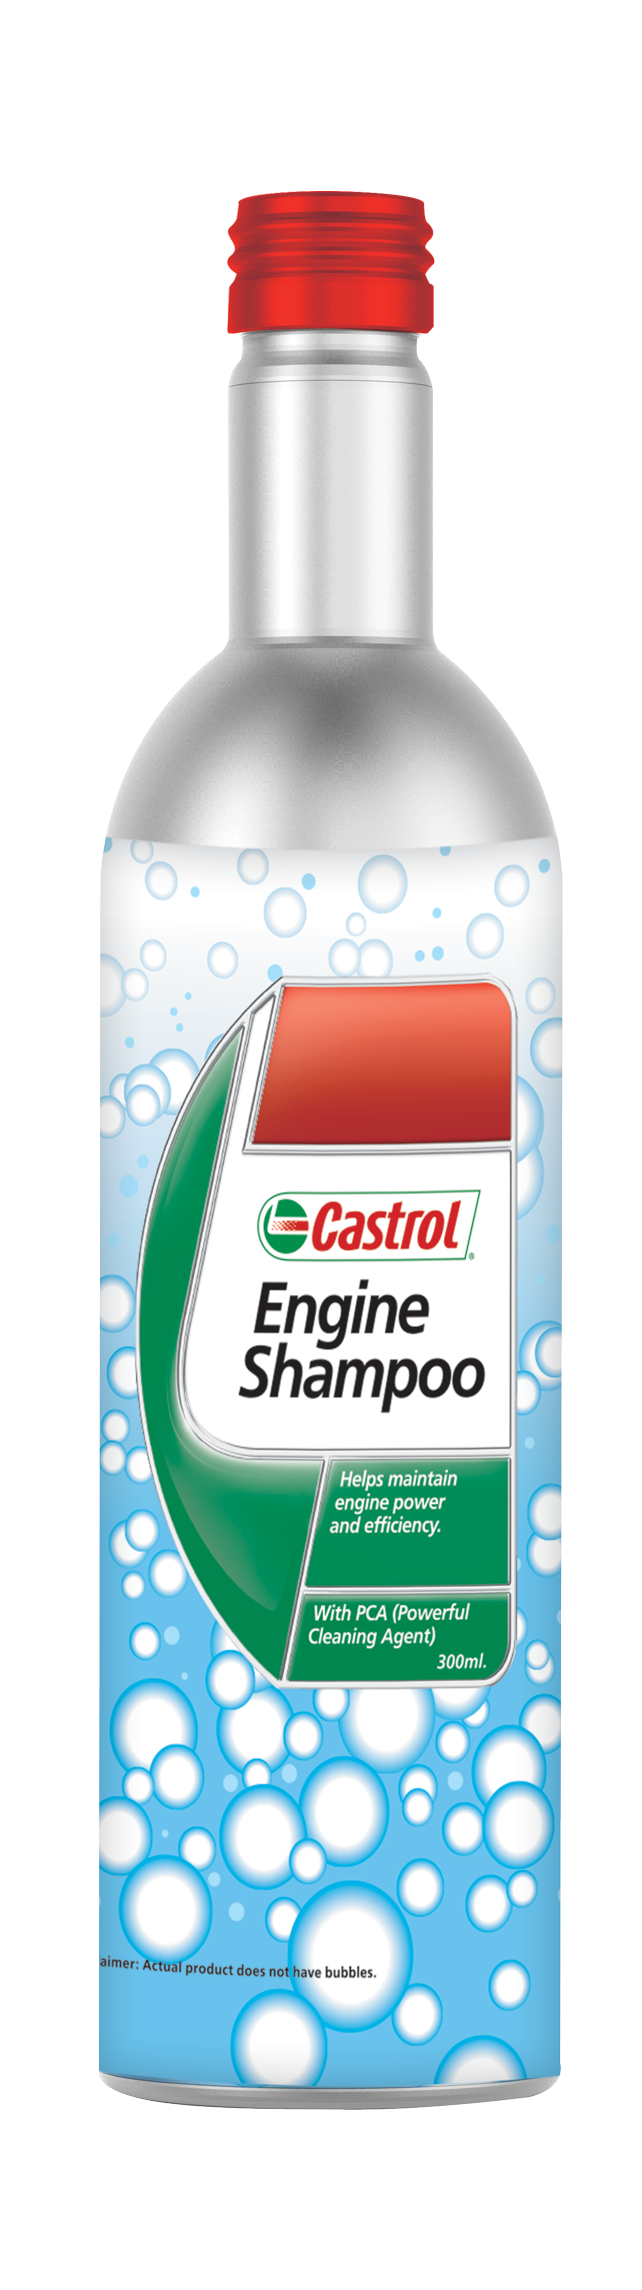 15CF7C-300ML Castrol Engine Shampoo is een middel met een Powerful Cleaning Agent (PCA) dat voorafgaand aan het verversen van de olie wordt gebruikt.